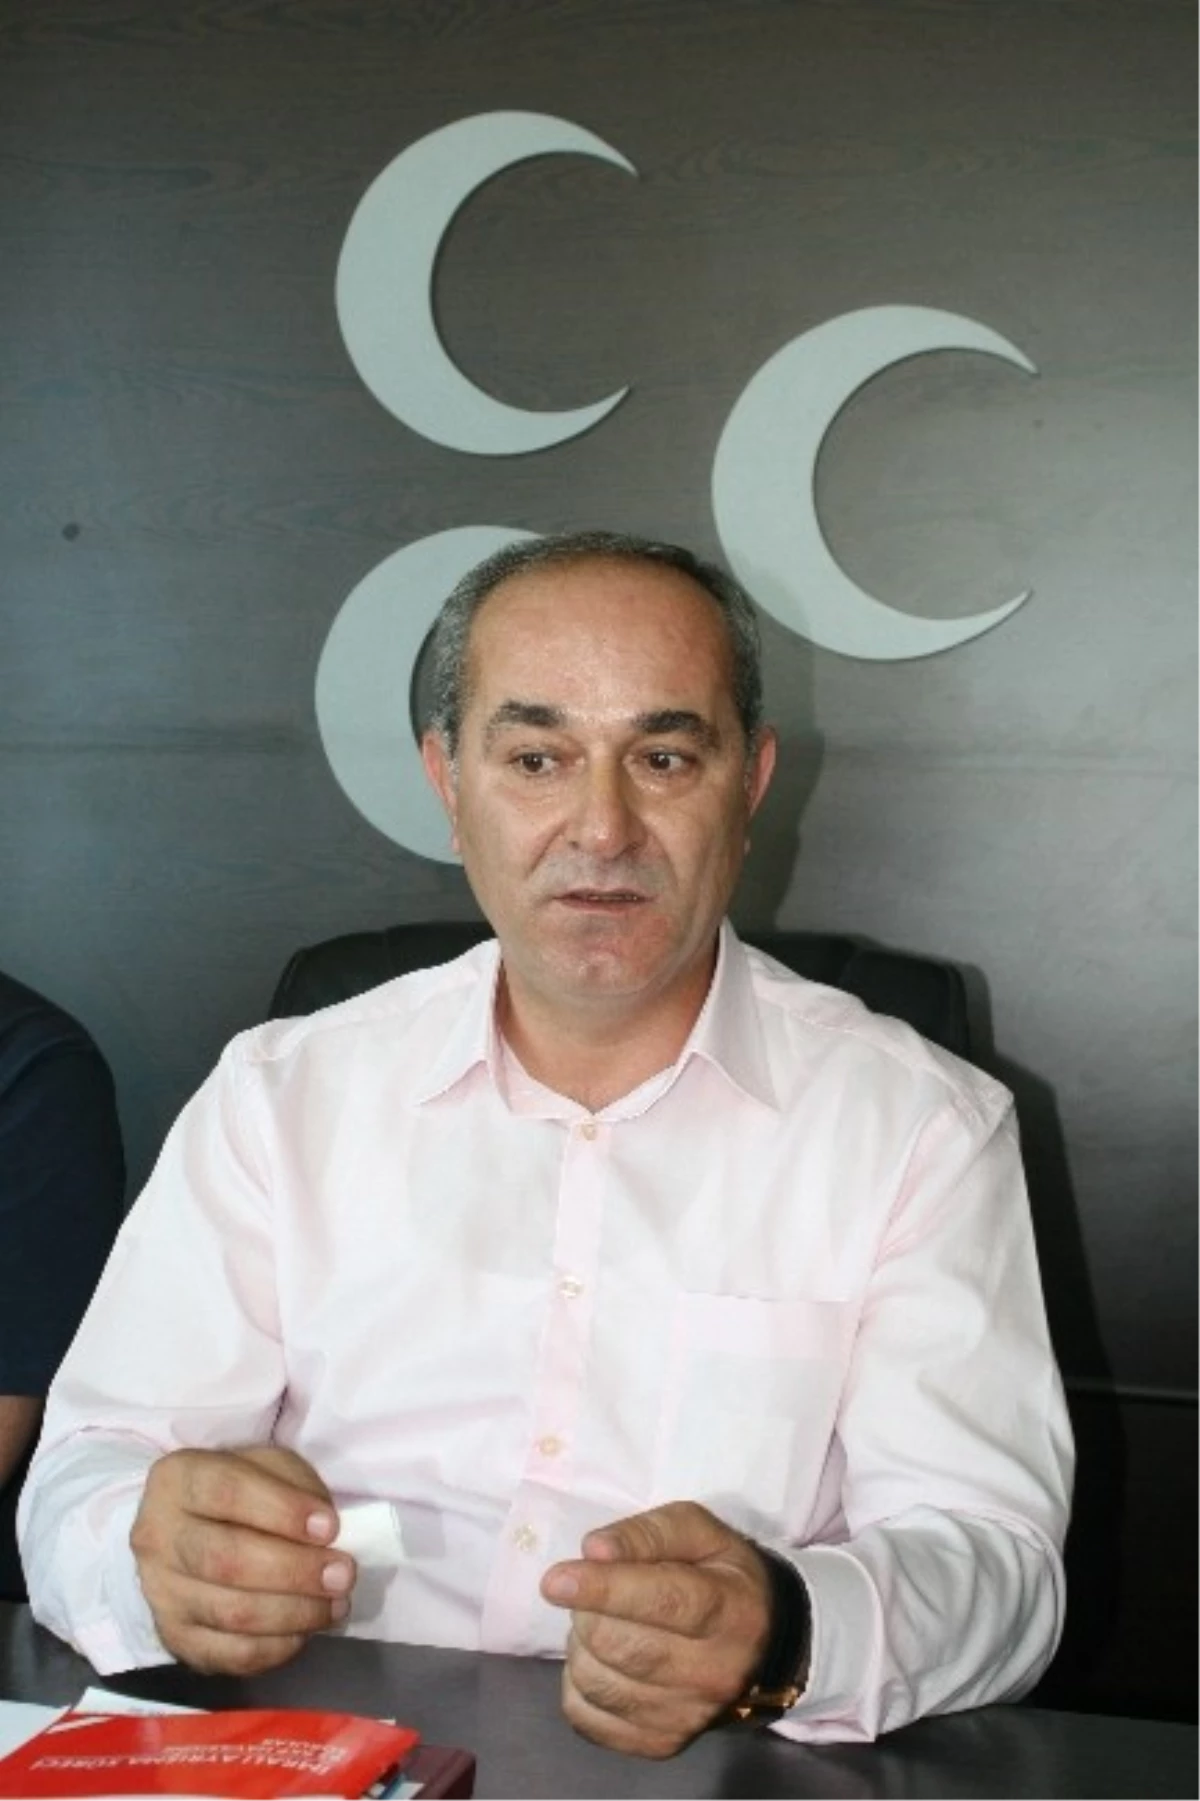 MHP İl Başkanı Danışmaz: "Gaziler Mümtaz ve Müstesna Kişilerdir"